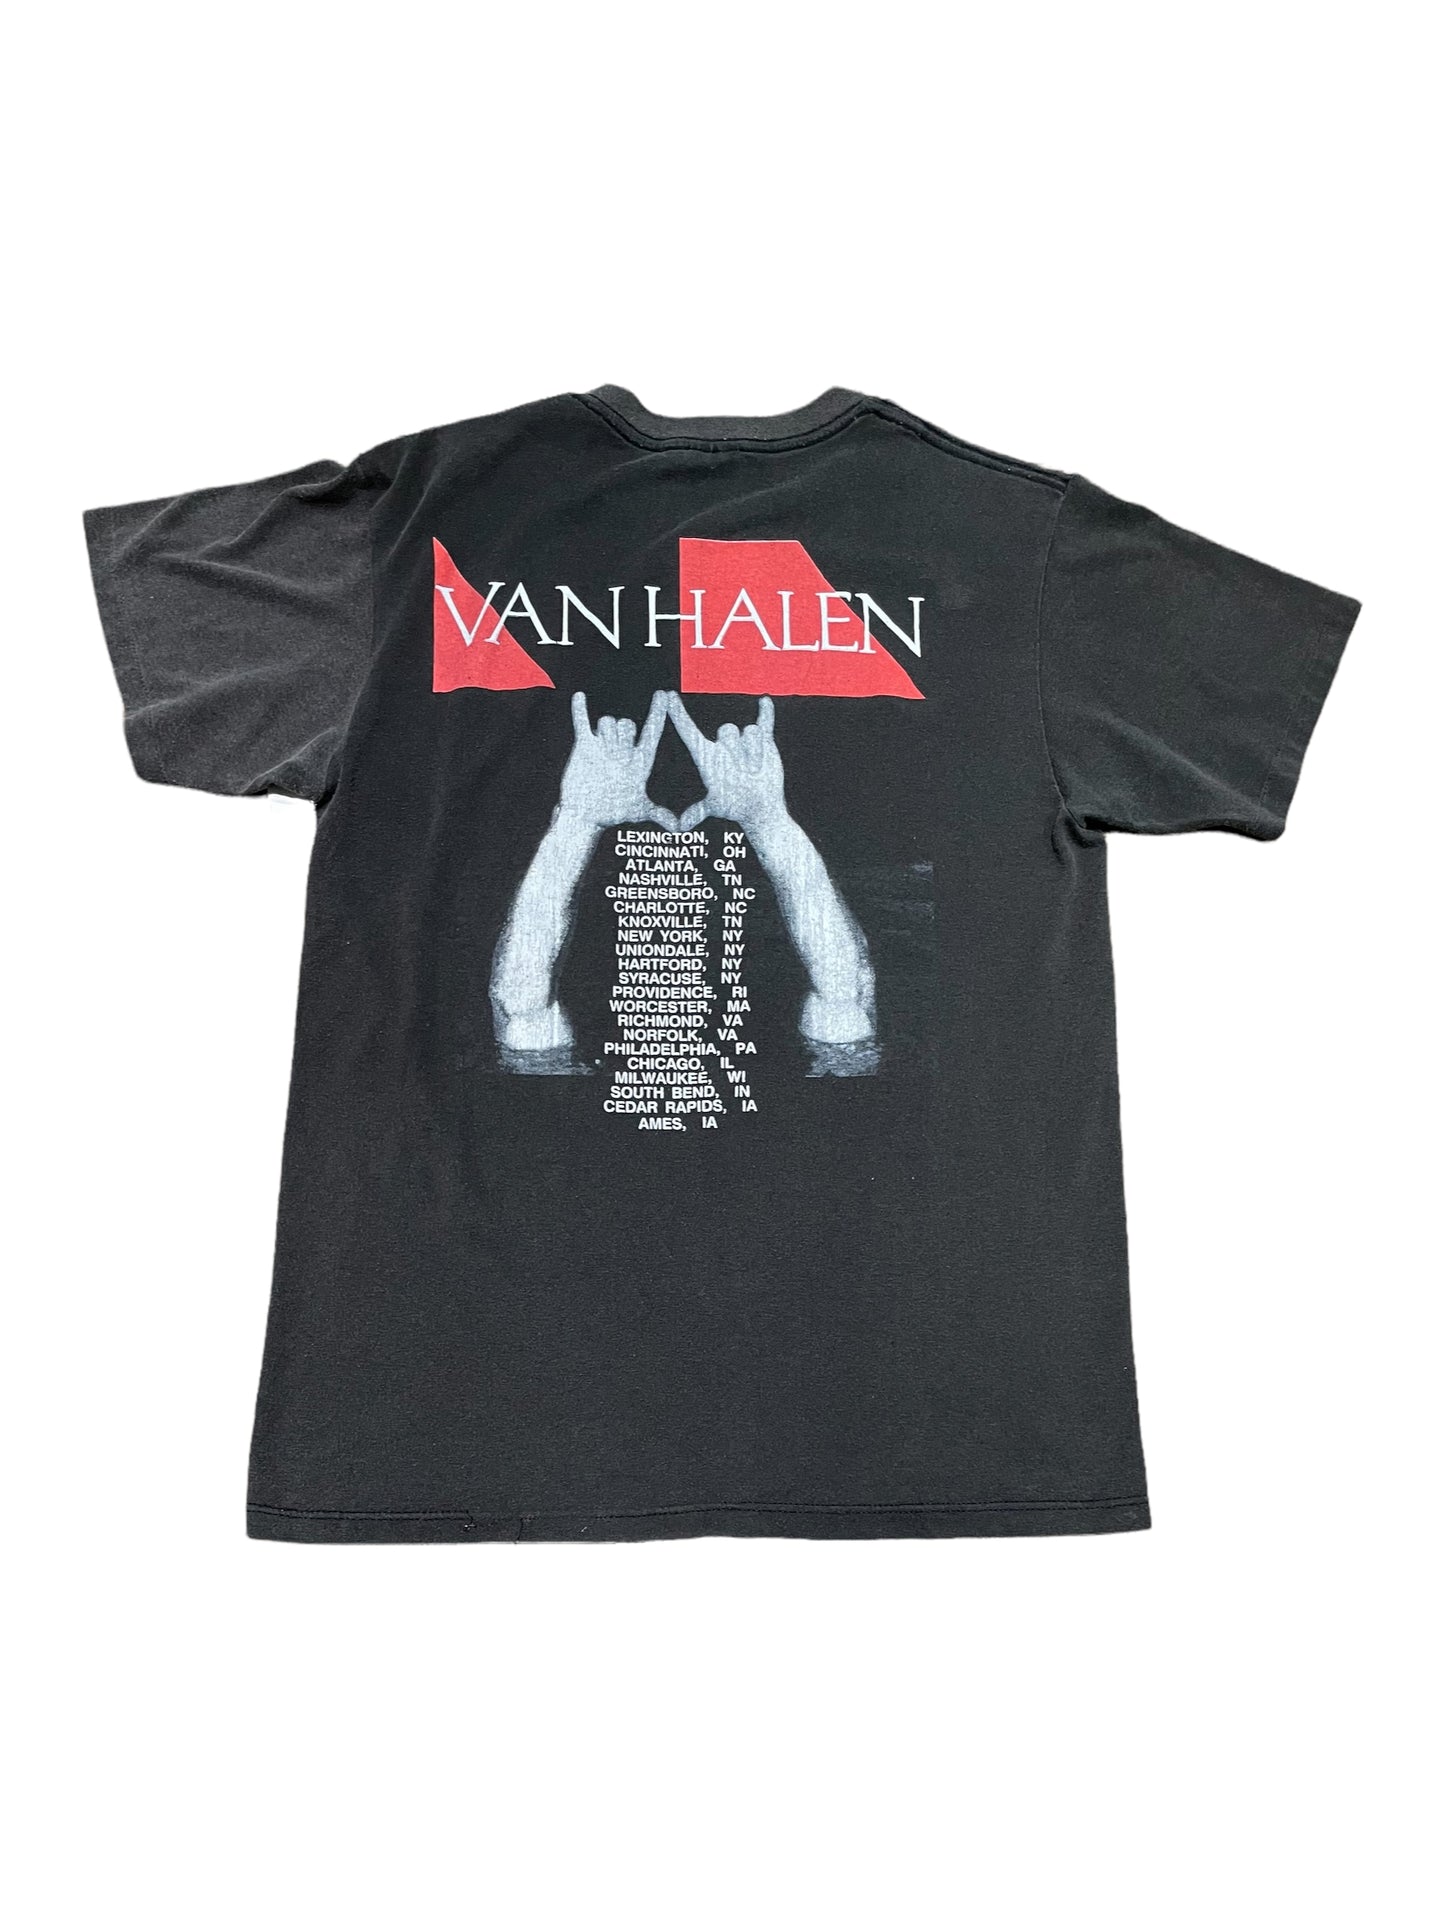 Vintage 1988 Van Halen Tour Band T Shirt Large